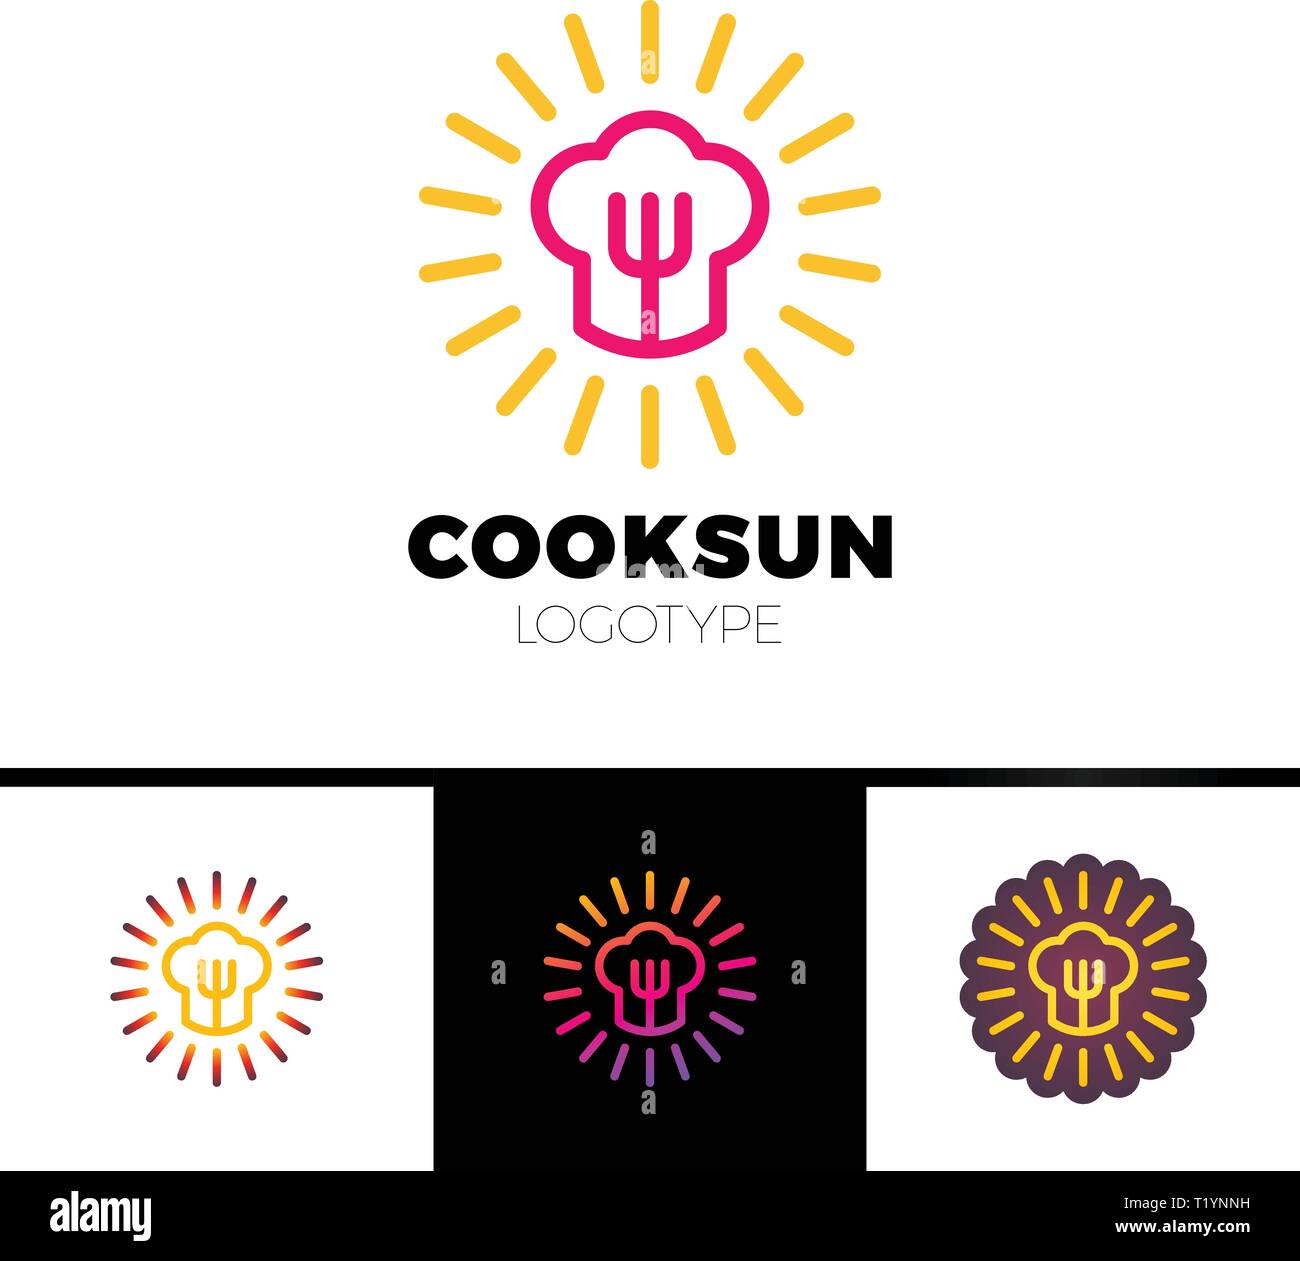 Küche, Café, Restaurant-Vector Logo template Konzeption Illustration. Koch hat, Gabel und Sonne. Sonnigen Essen anmelden. Designelemente. Stock Vektor